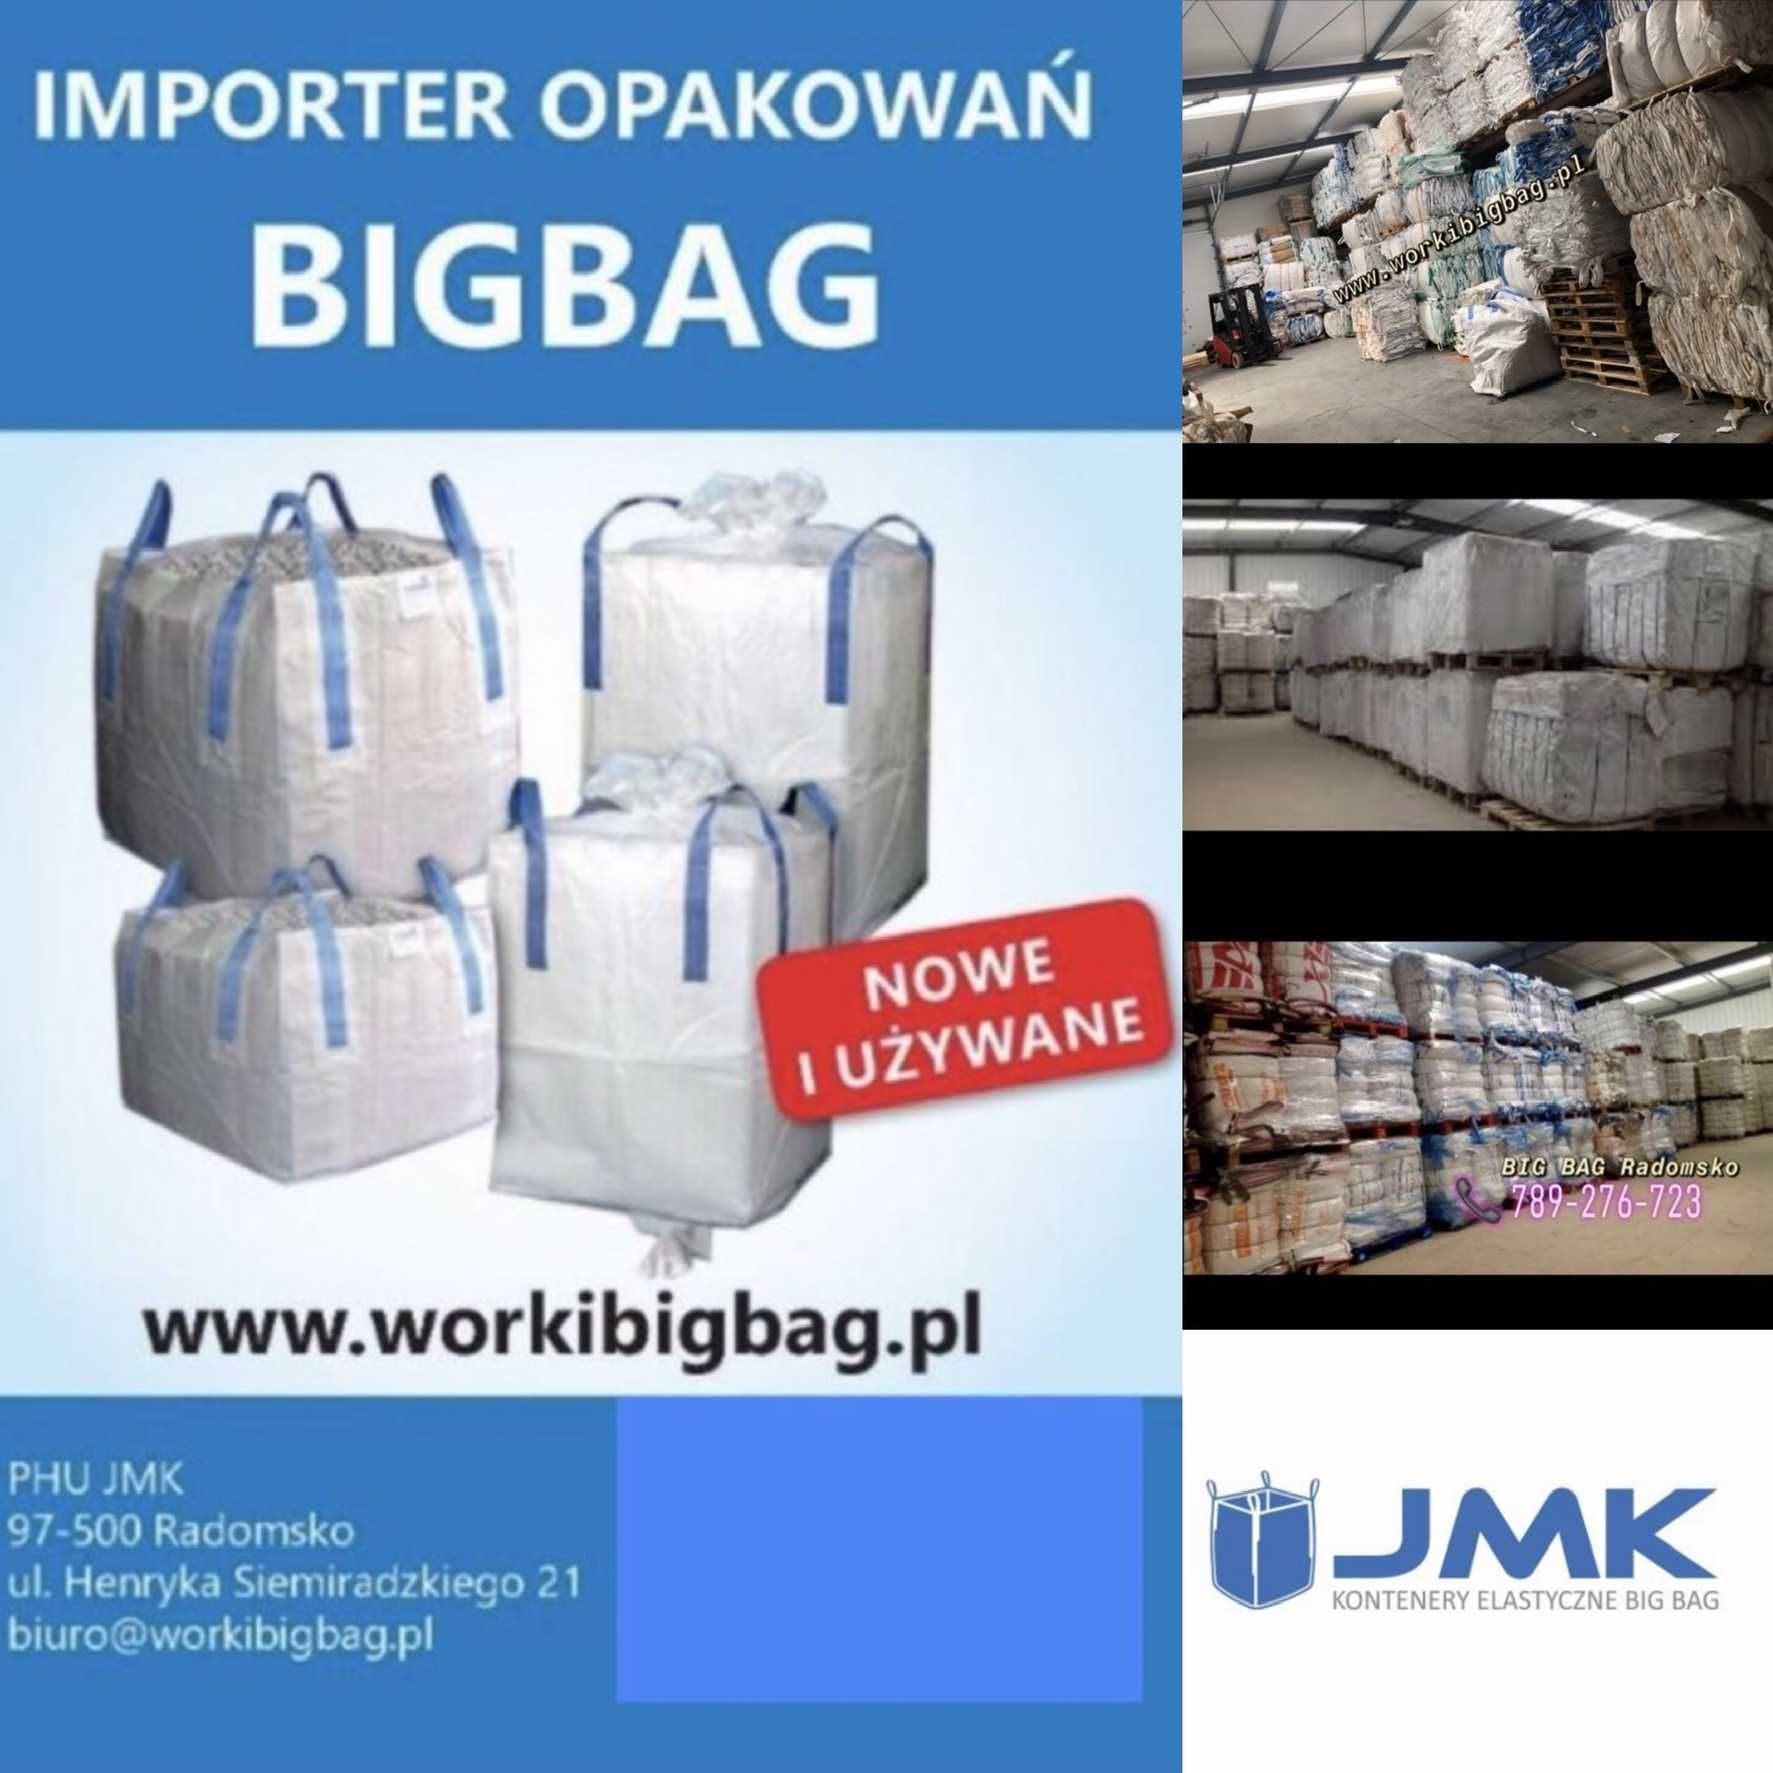 Worki Big Bag NOWE 122/89/89 Big Bag Bagi Największy Wybór